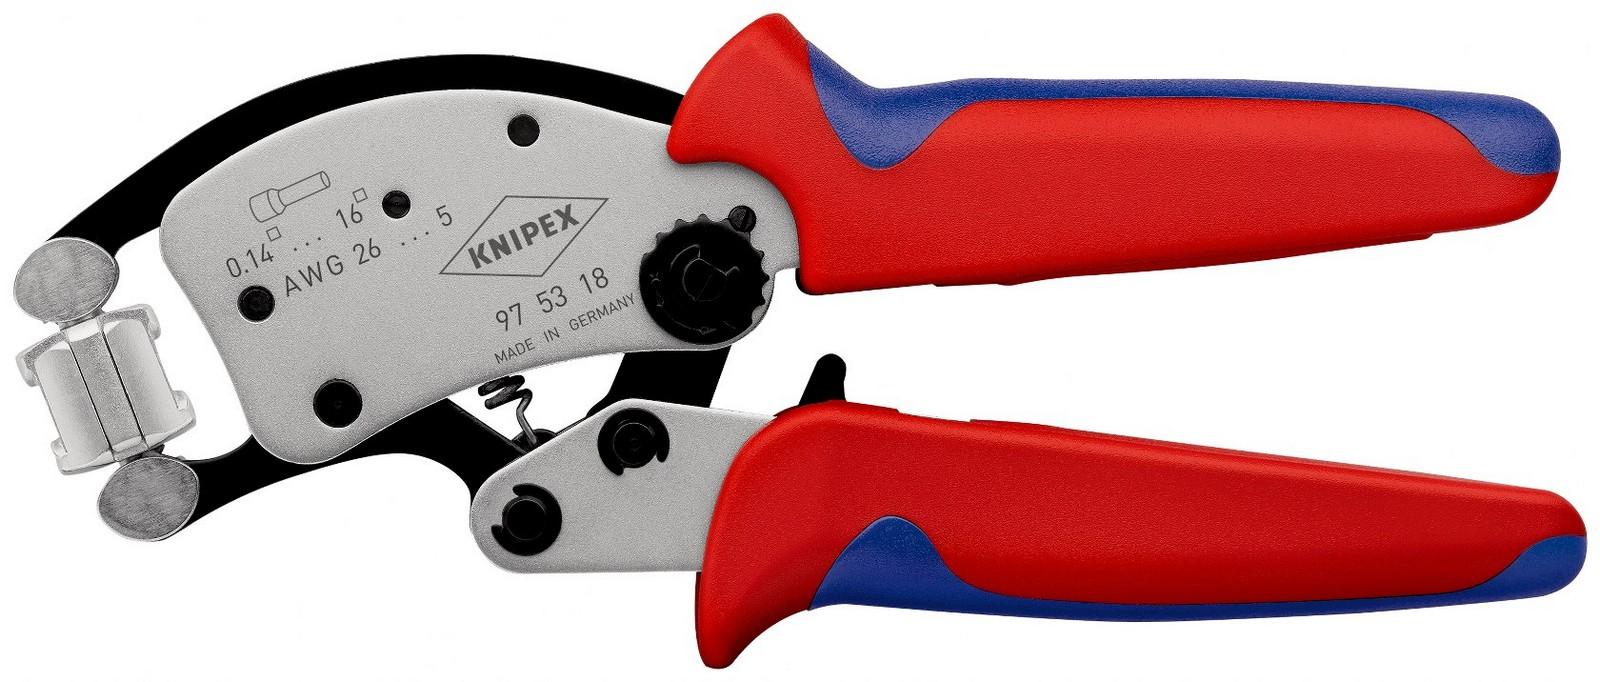 KNIPEX Samopodešavajuća klešta završne čaure sa rotirajućom glavom Twistor 16 za krimpovanje hromirana 200 mm 97 53 18 SB crvena